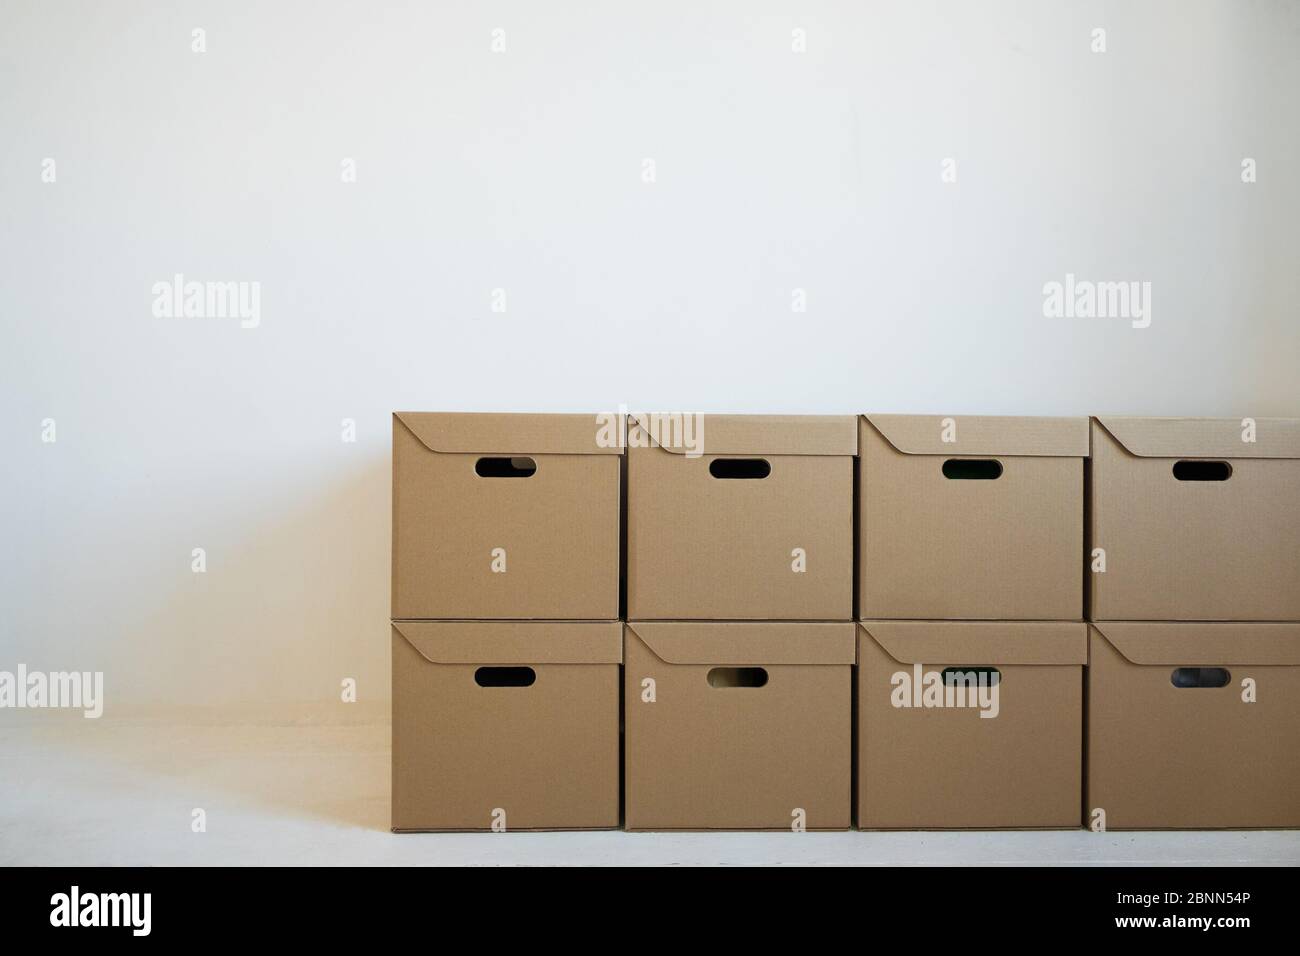 Boîtes en carton pour le stockage qui sont soigneusement empilées contre un mur blanc. Concept de livraison. Banque D'Images